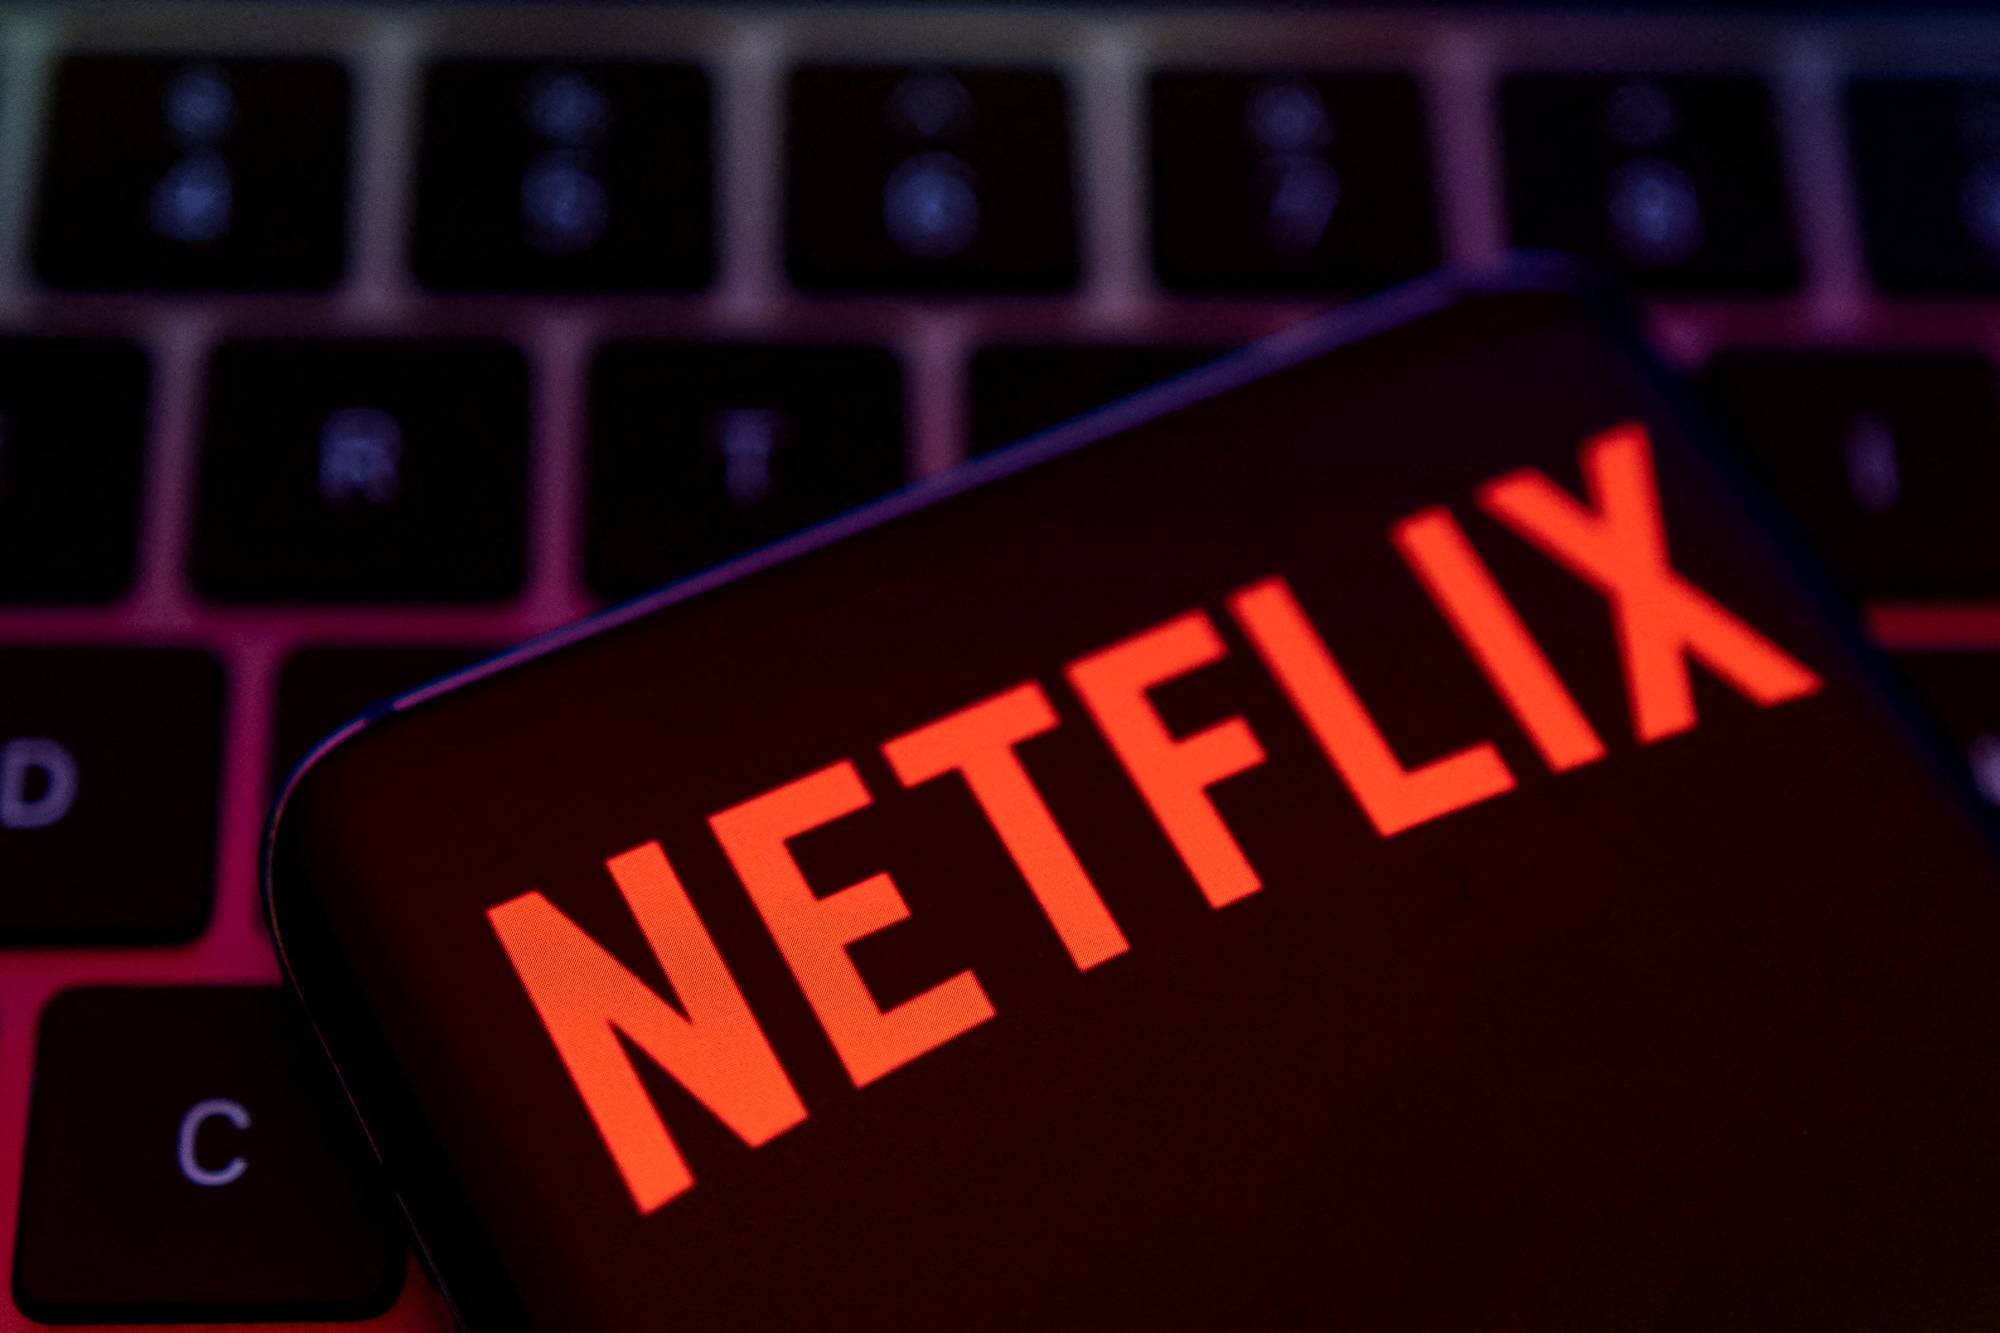 6 lý do người dùng rời bỏ Netflix